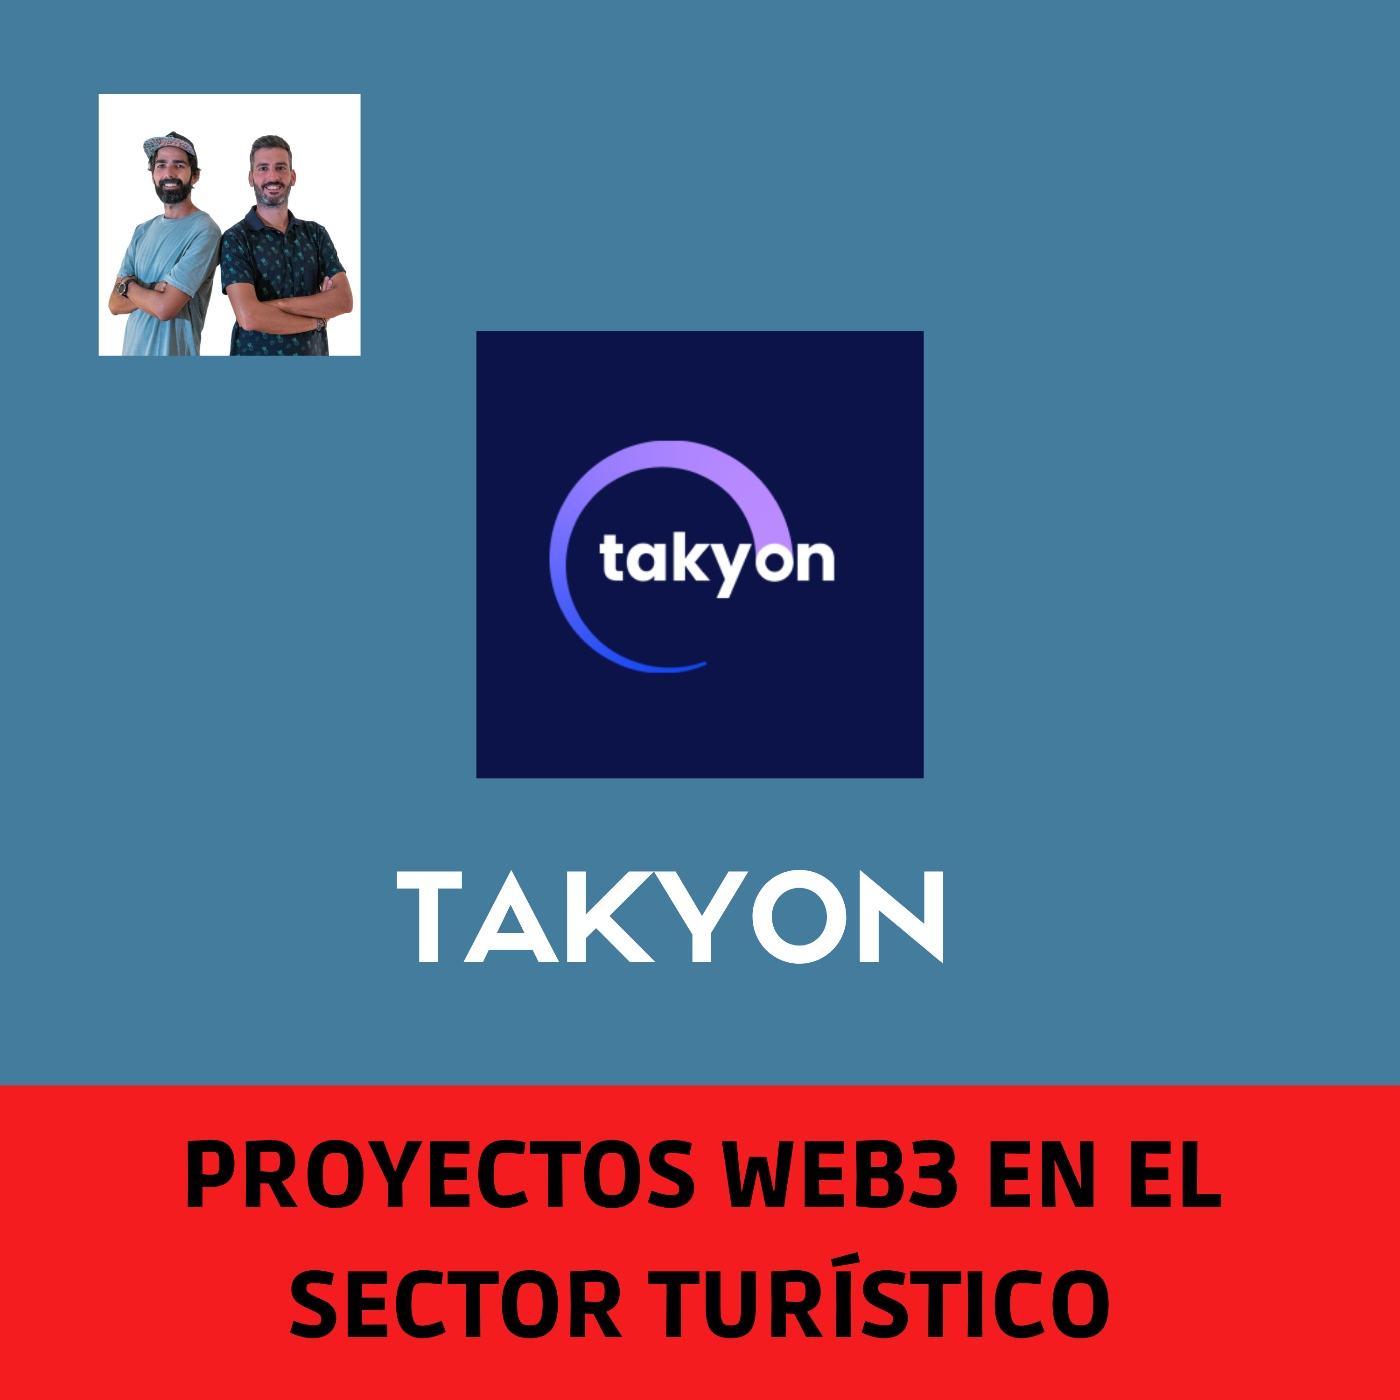 Proyectos Web3 en el sector turístico. Episodio 1 - Takyon